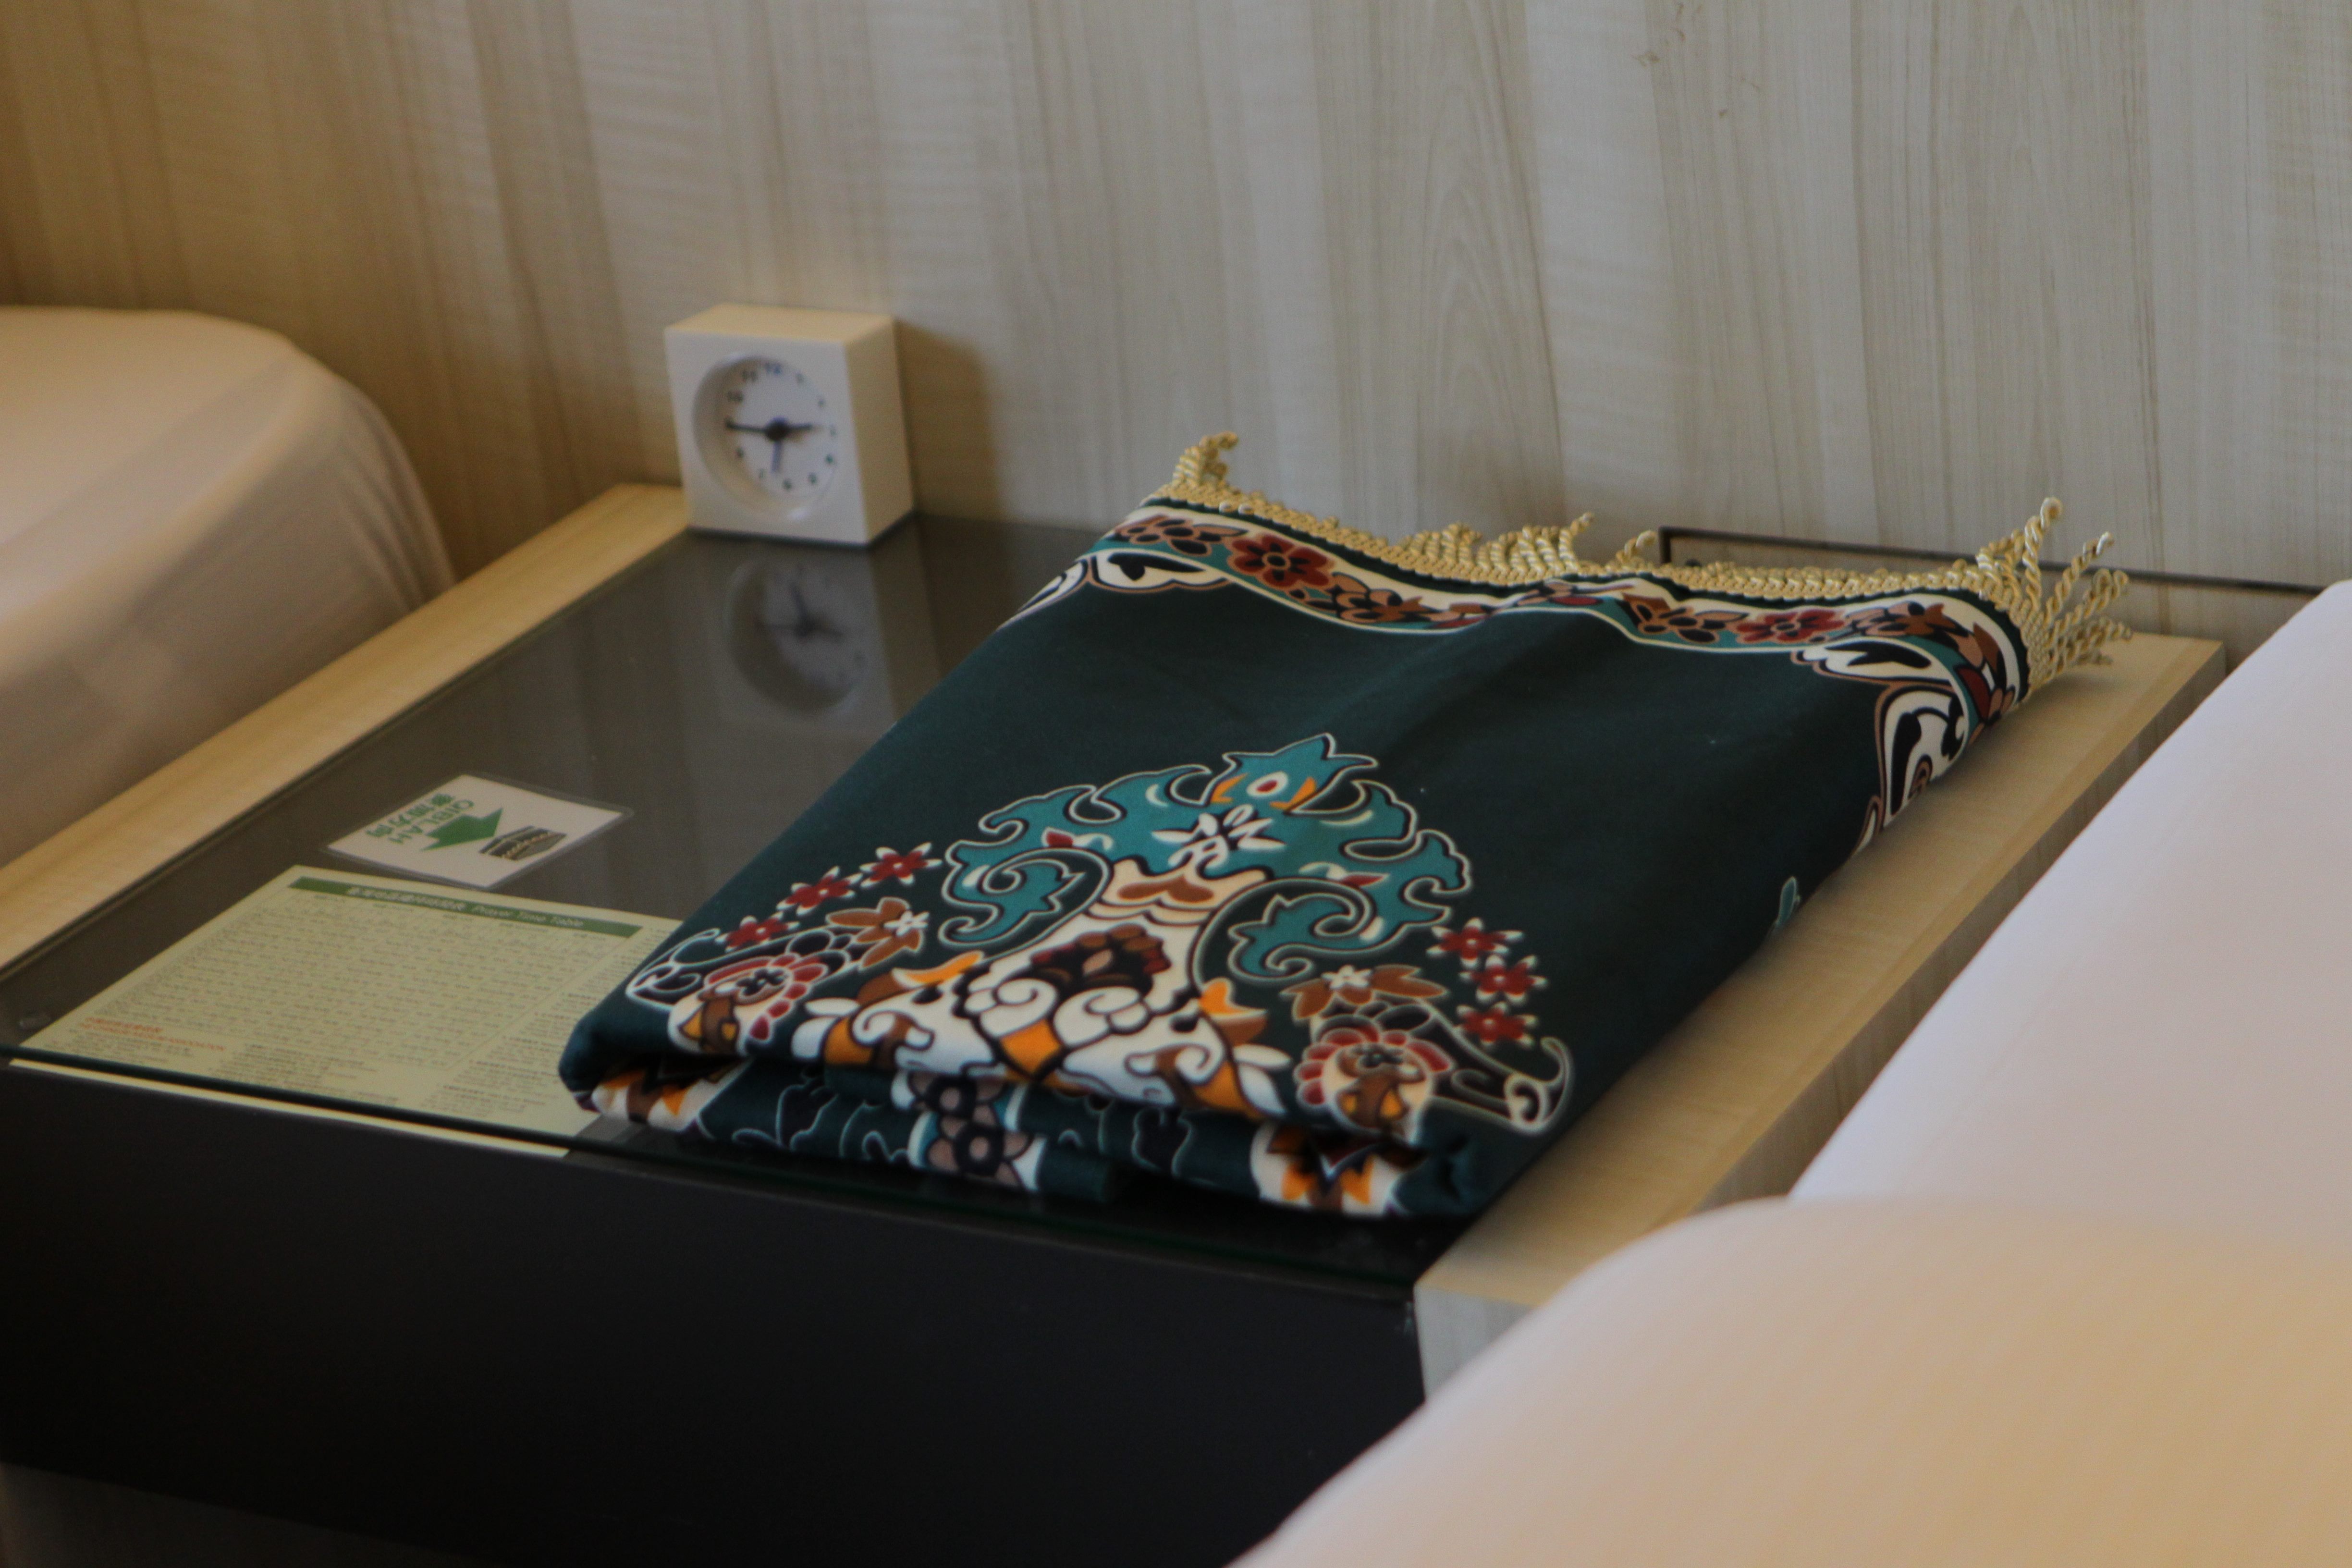 旅館客房祈禱毯、麥加方位標示。